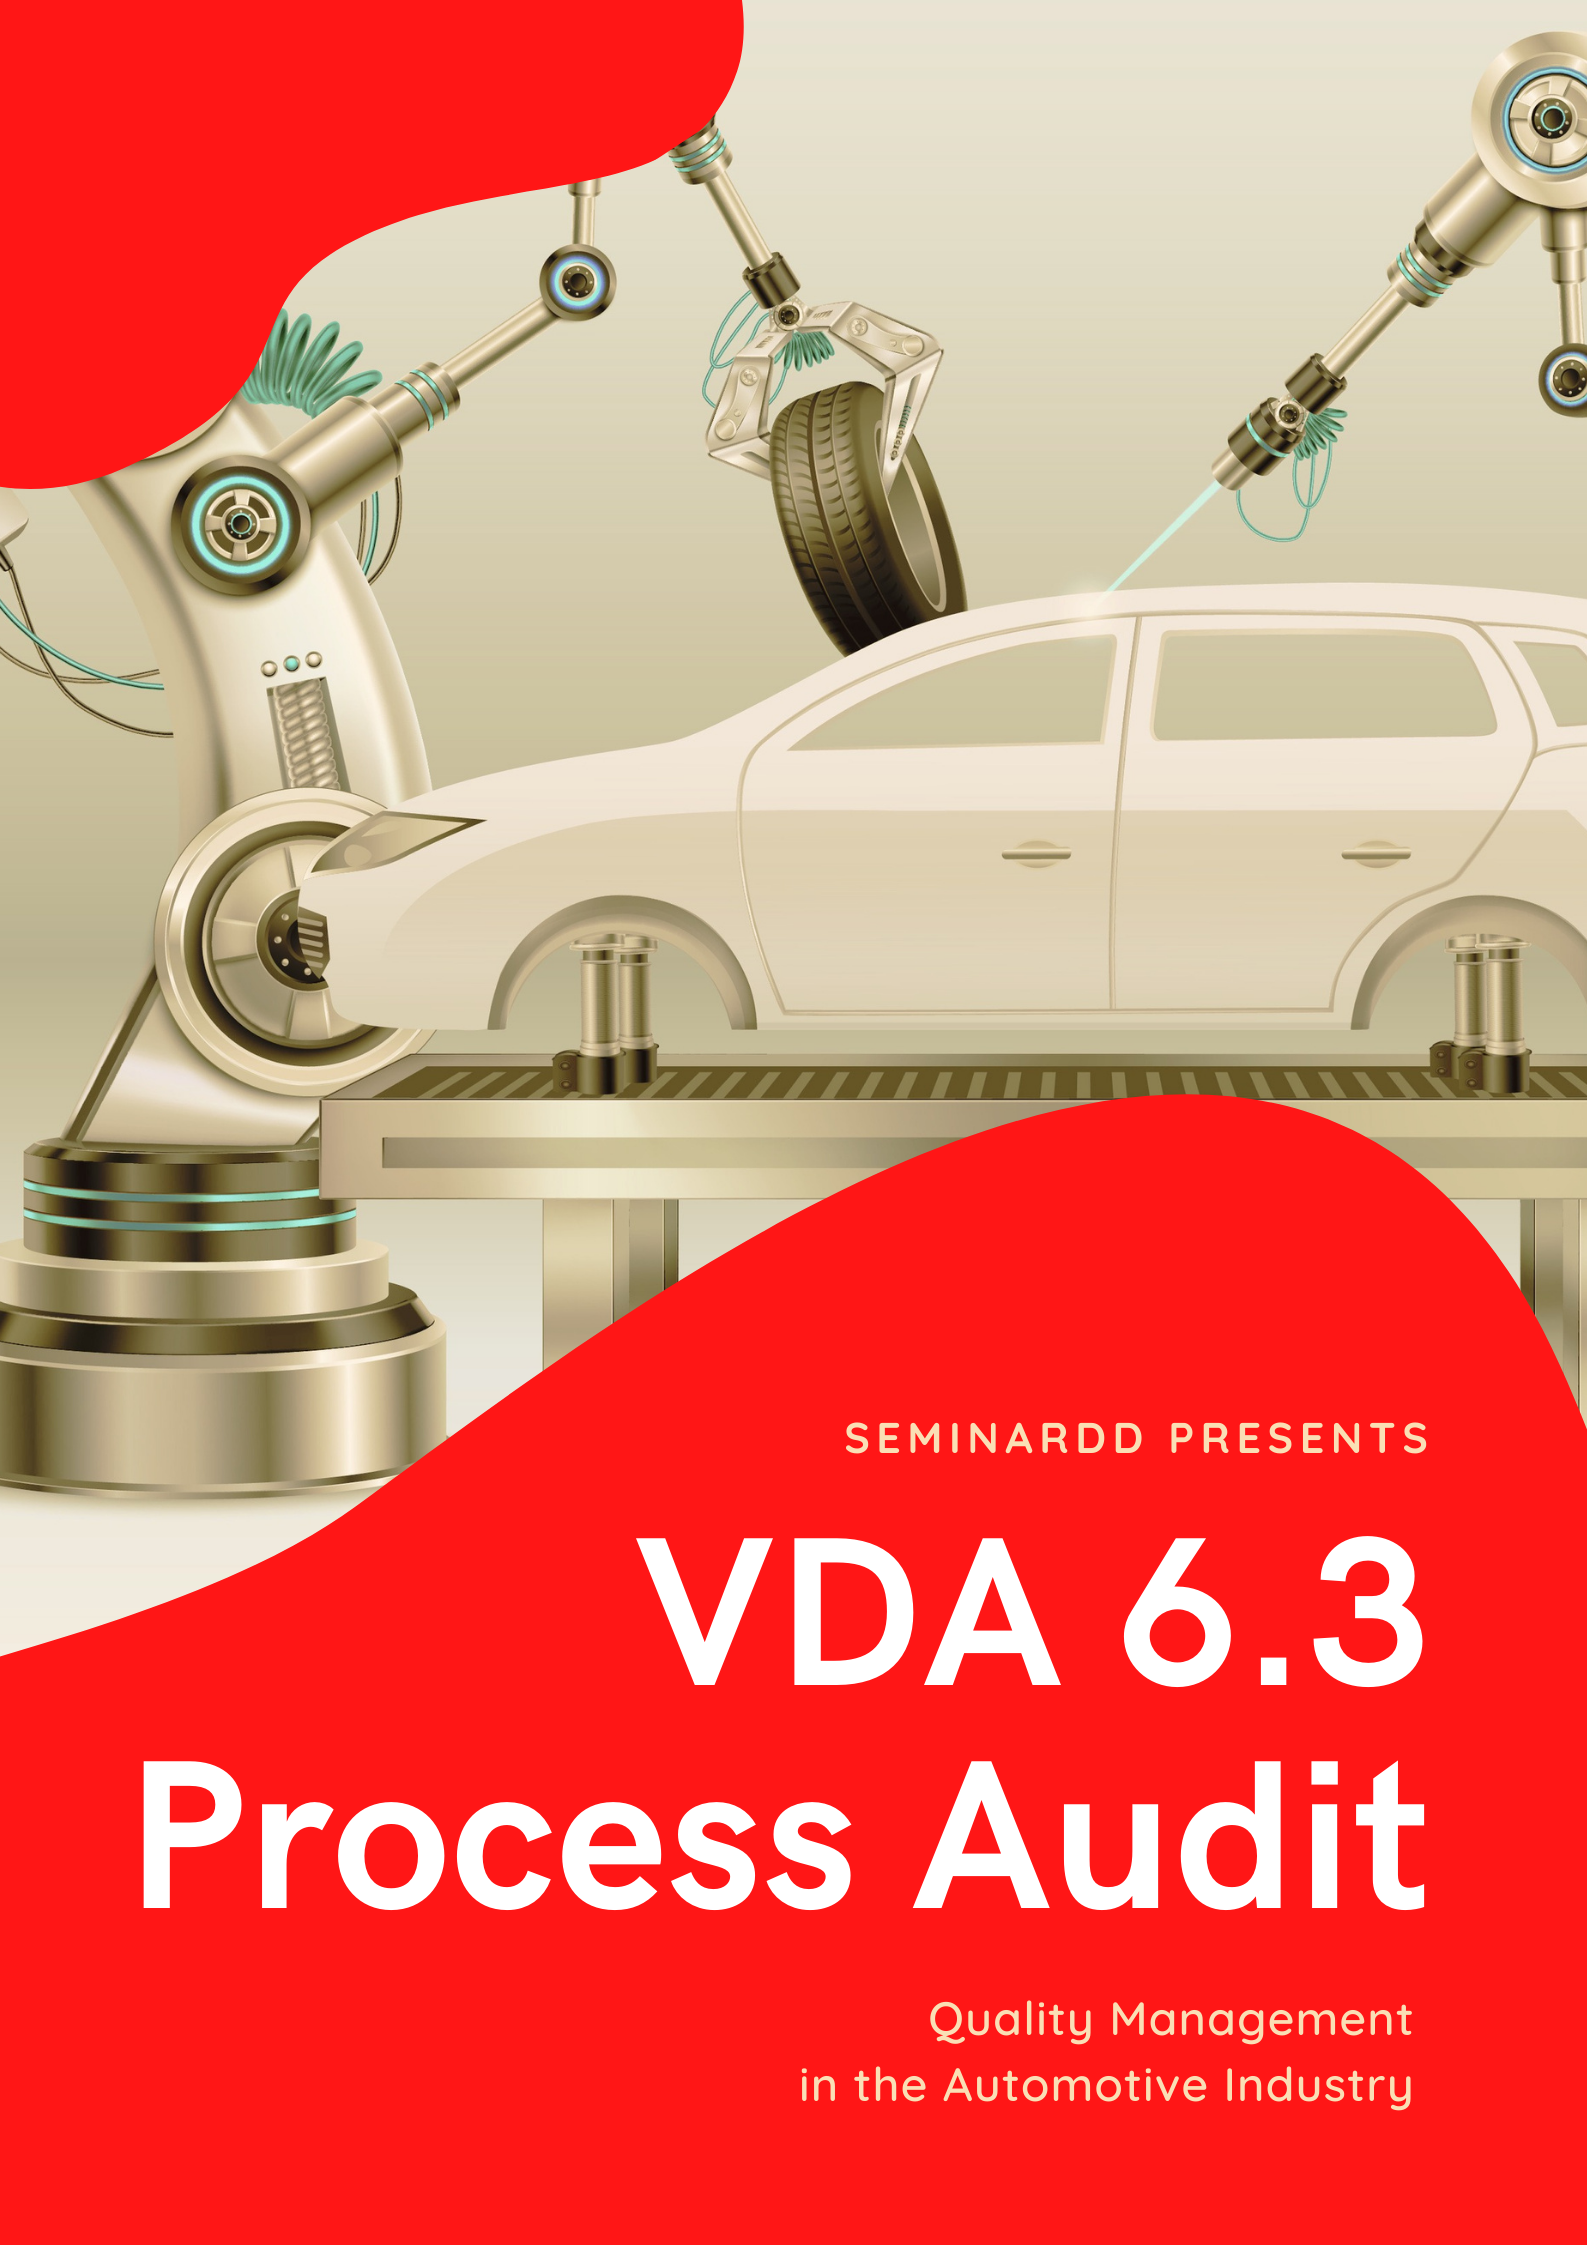 อบรม อบรม การตีความ และการประยุกต์ใช้ ข้อกำหนด VDA6.3 Process Audit